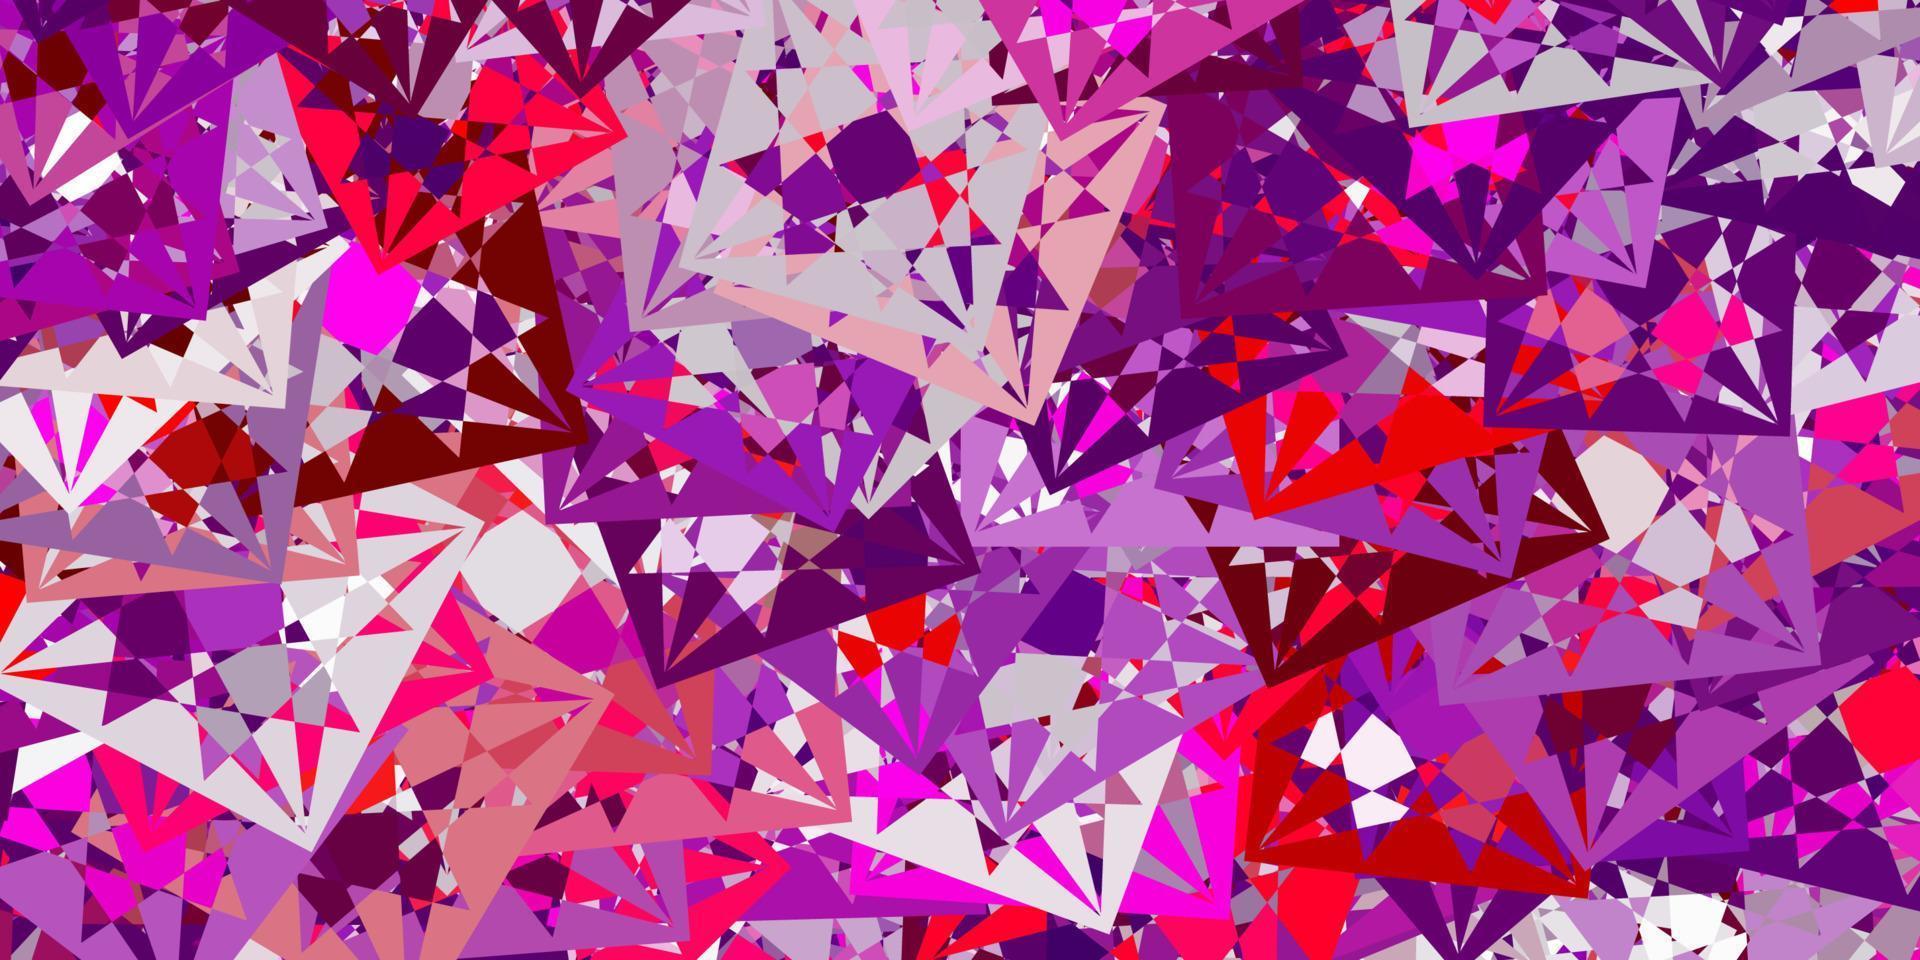 lichtpaars, roze vector sjabloon met driehoekige vormen.